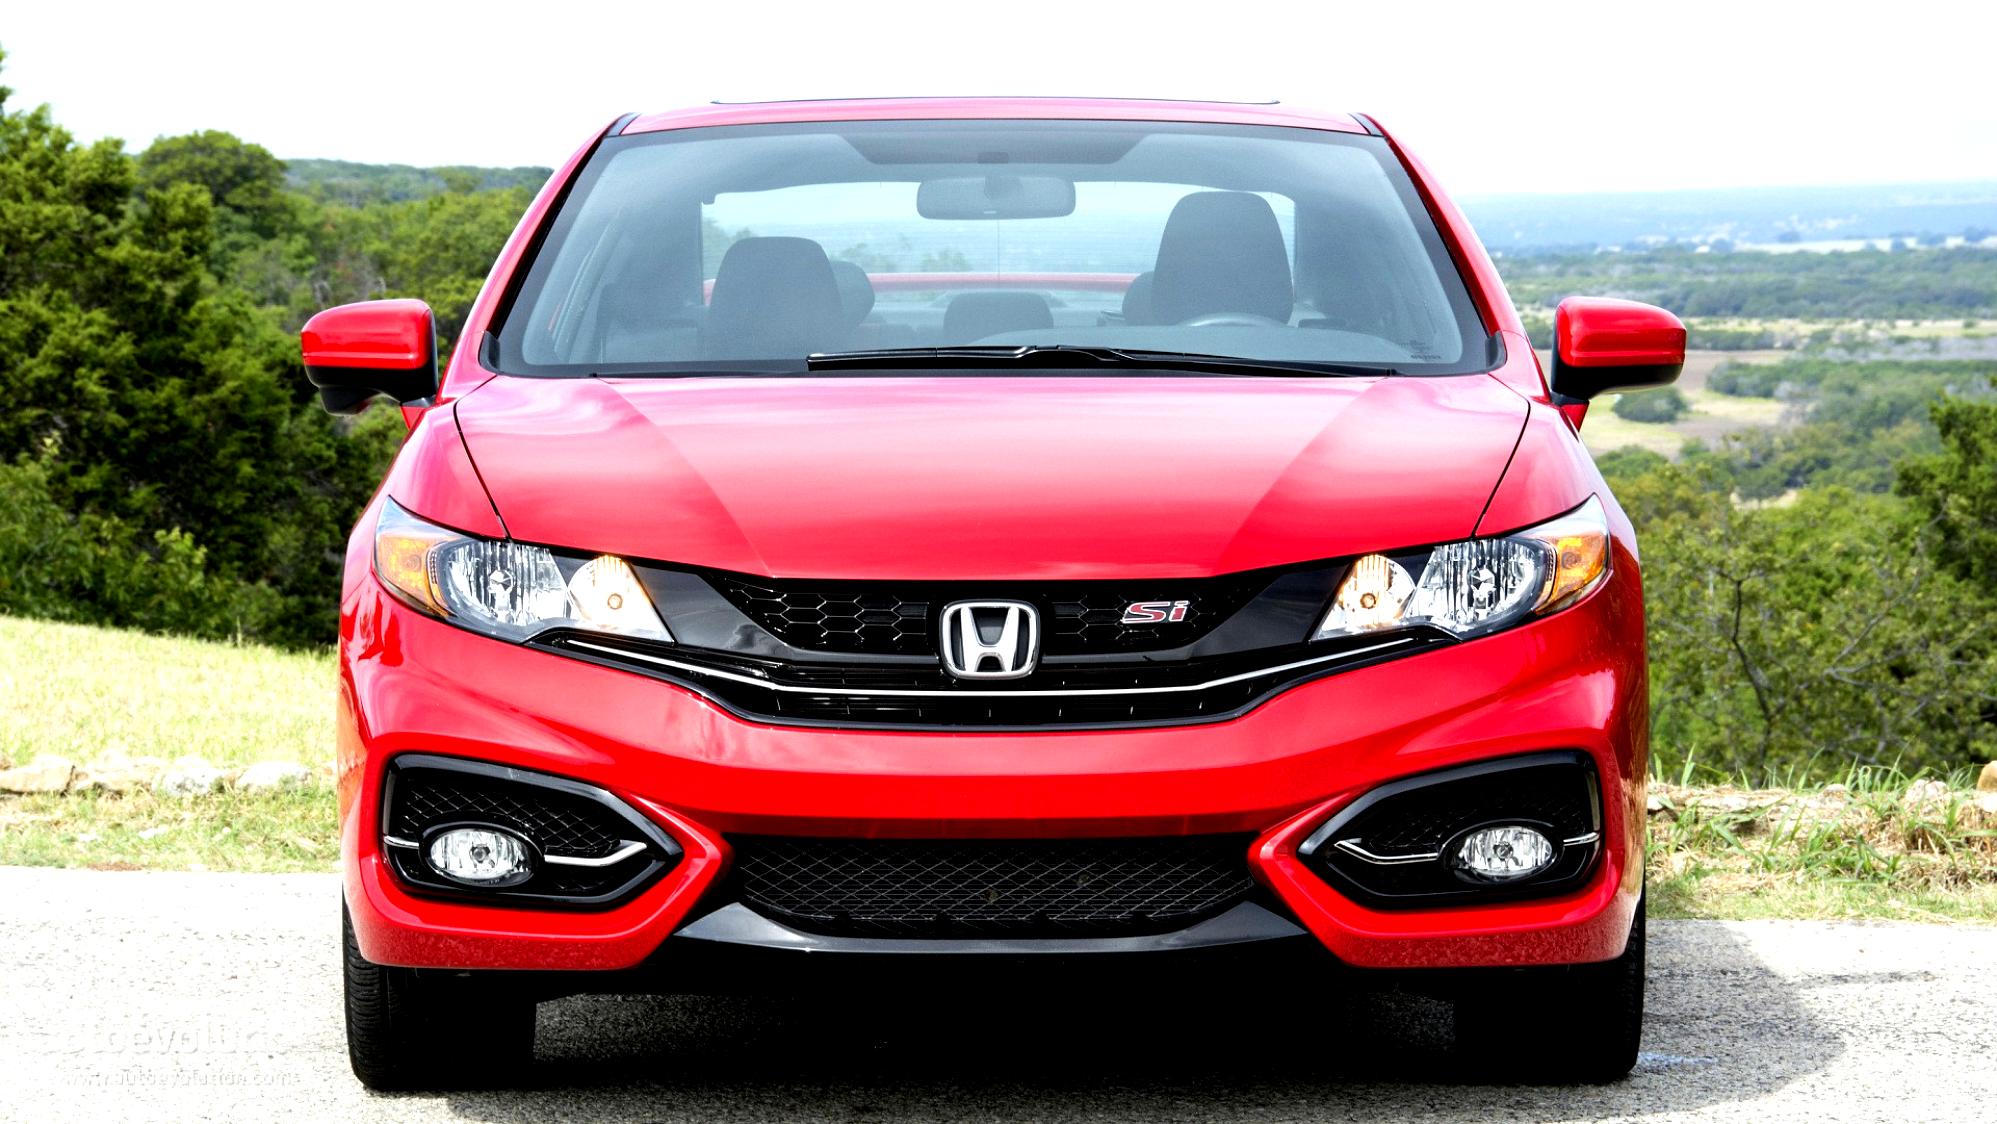 Honda civic 2015. Honda Civic si 2015. Honda Civic 2015 Coupe. Honda Civic si Coupe 2015. Хонда Цивик 2015 купе.